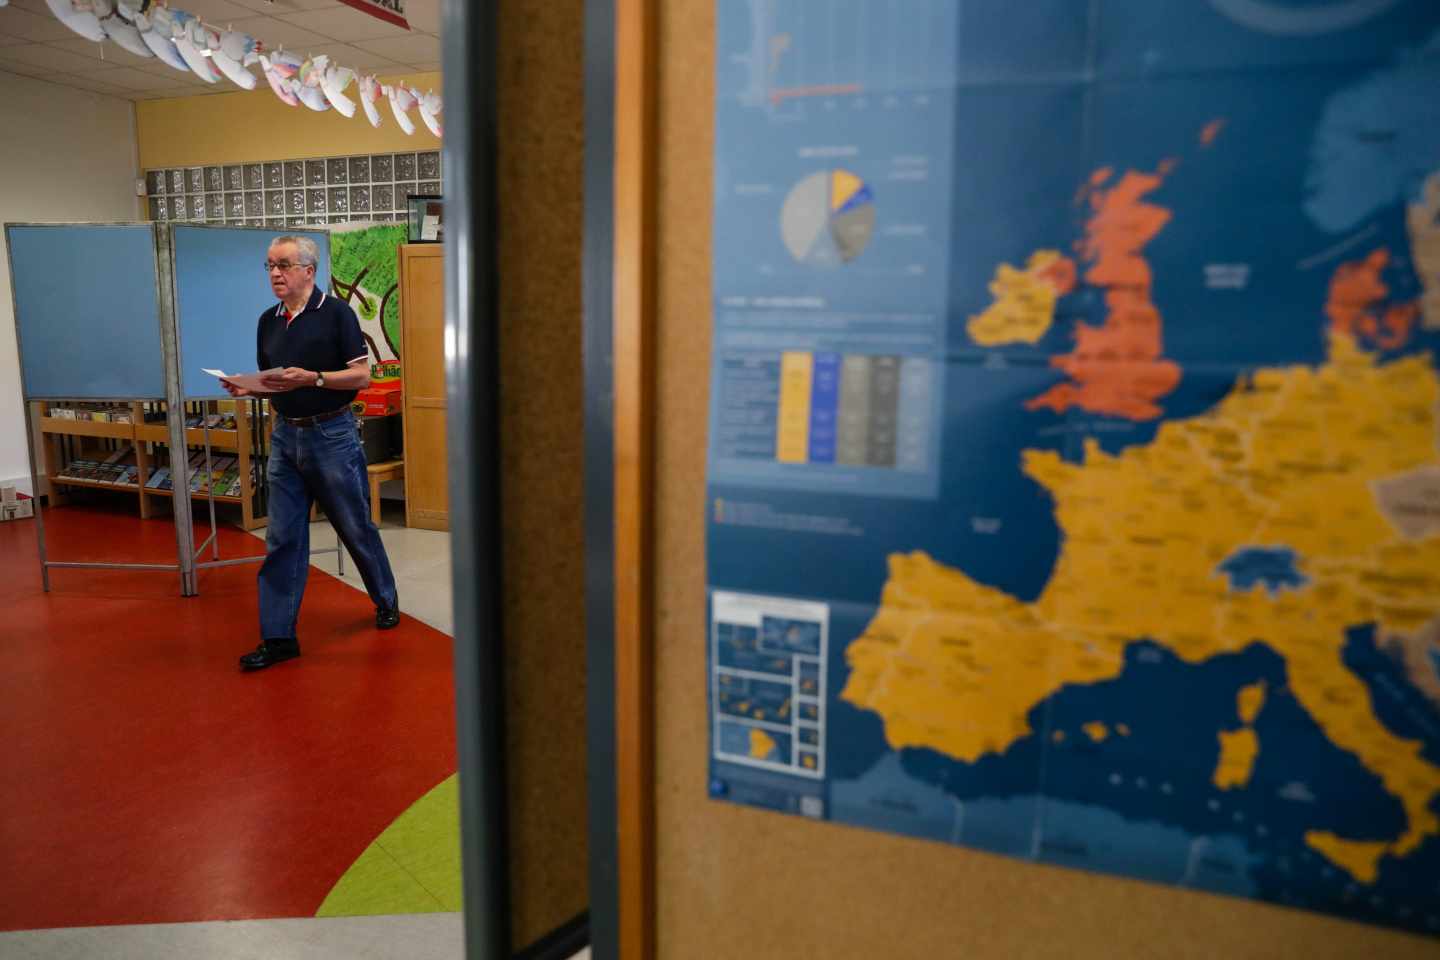 Un votante se dirige a las urnas en un colegio donde se muestra un mapa de Europa.